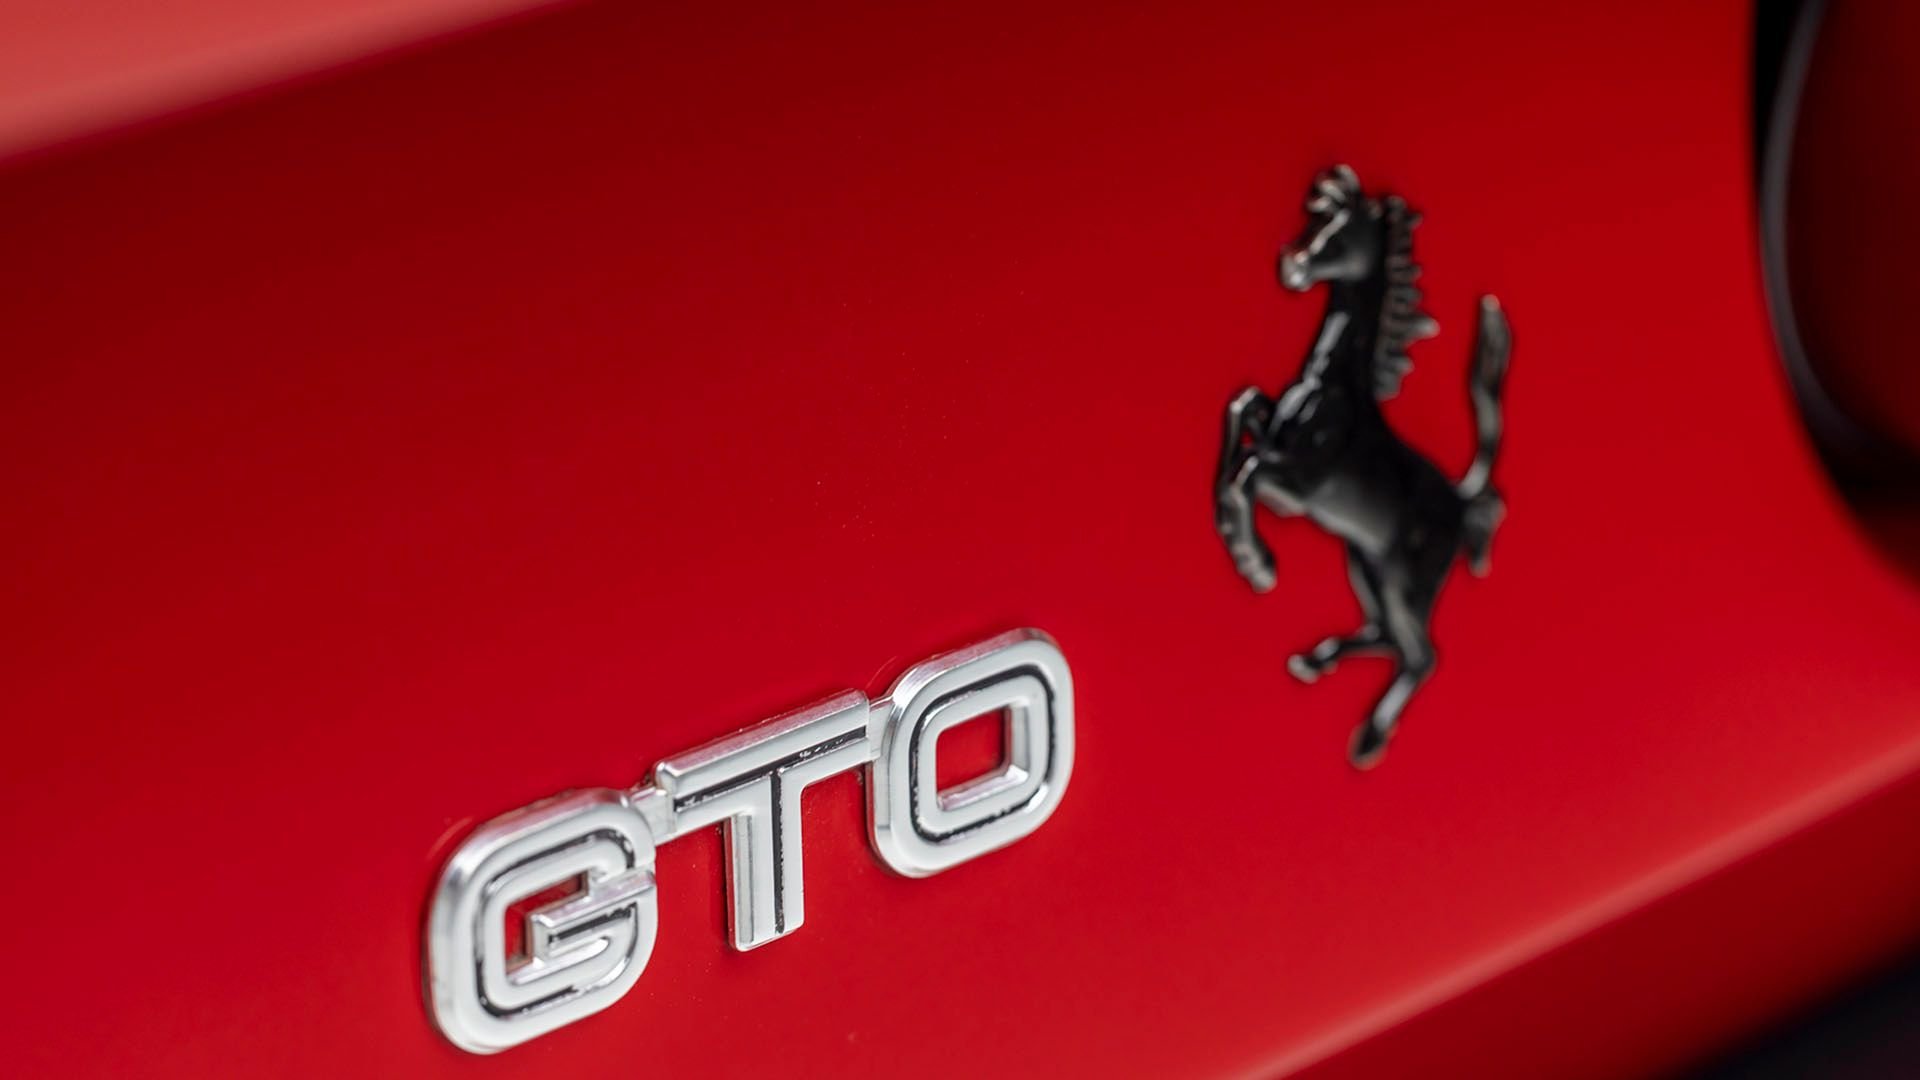 The Last Ferrari 288 GTO Was Enzo Ferrari’s Apology to Niki Lauda